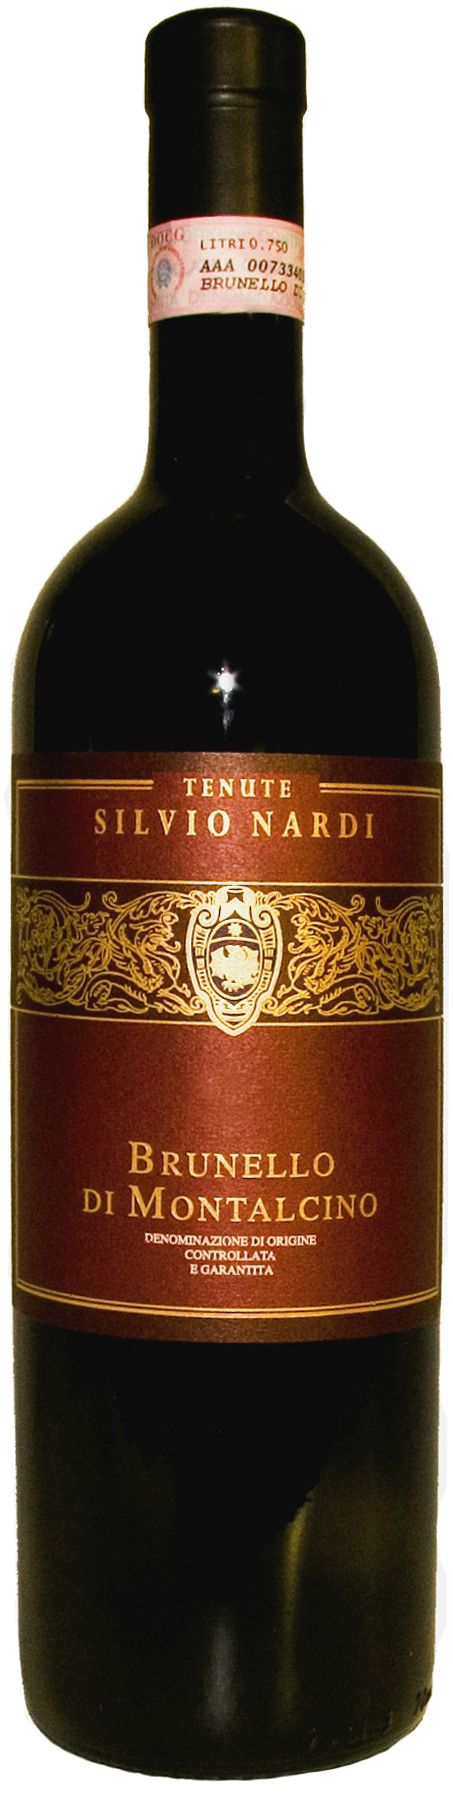 Tenute Silvio Nardi, Brunello Di Montalcino, 1999